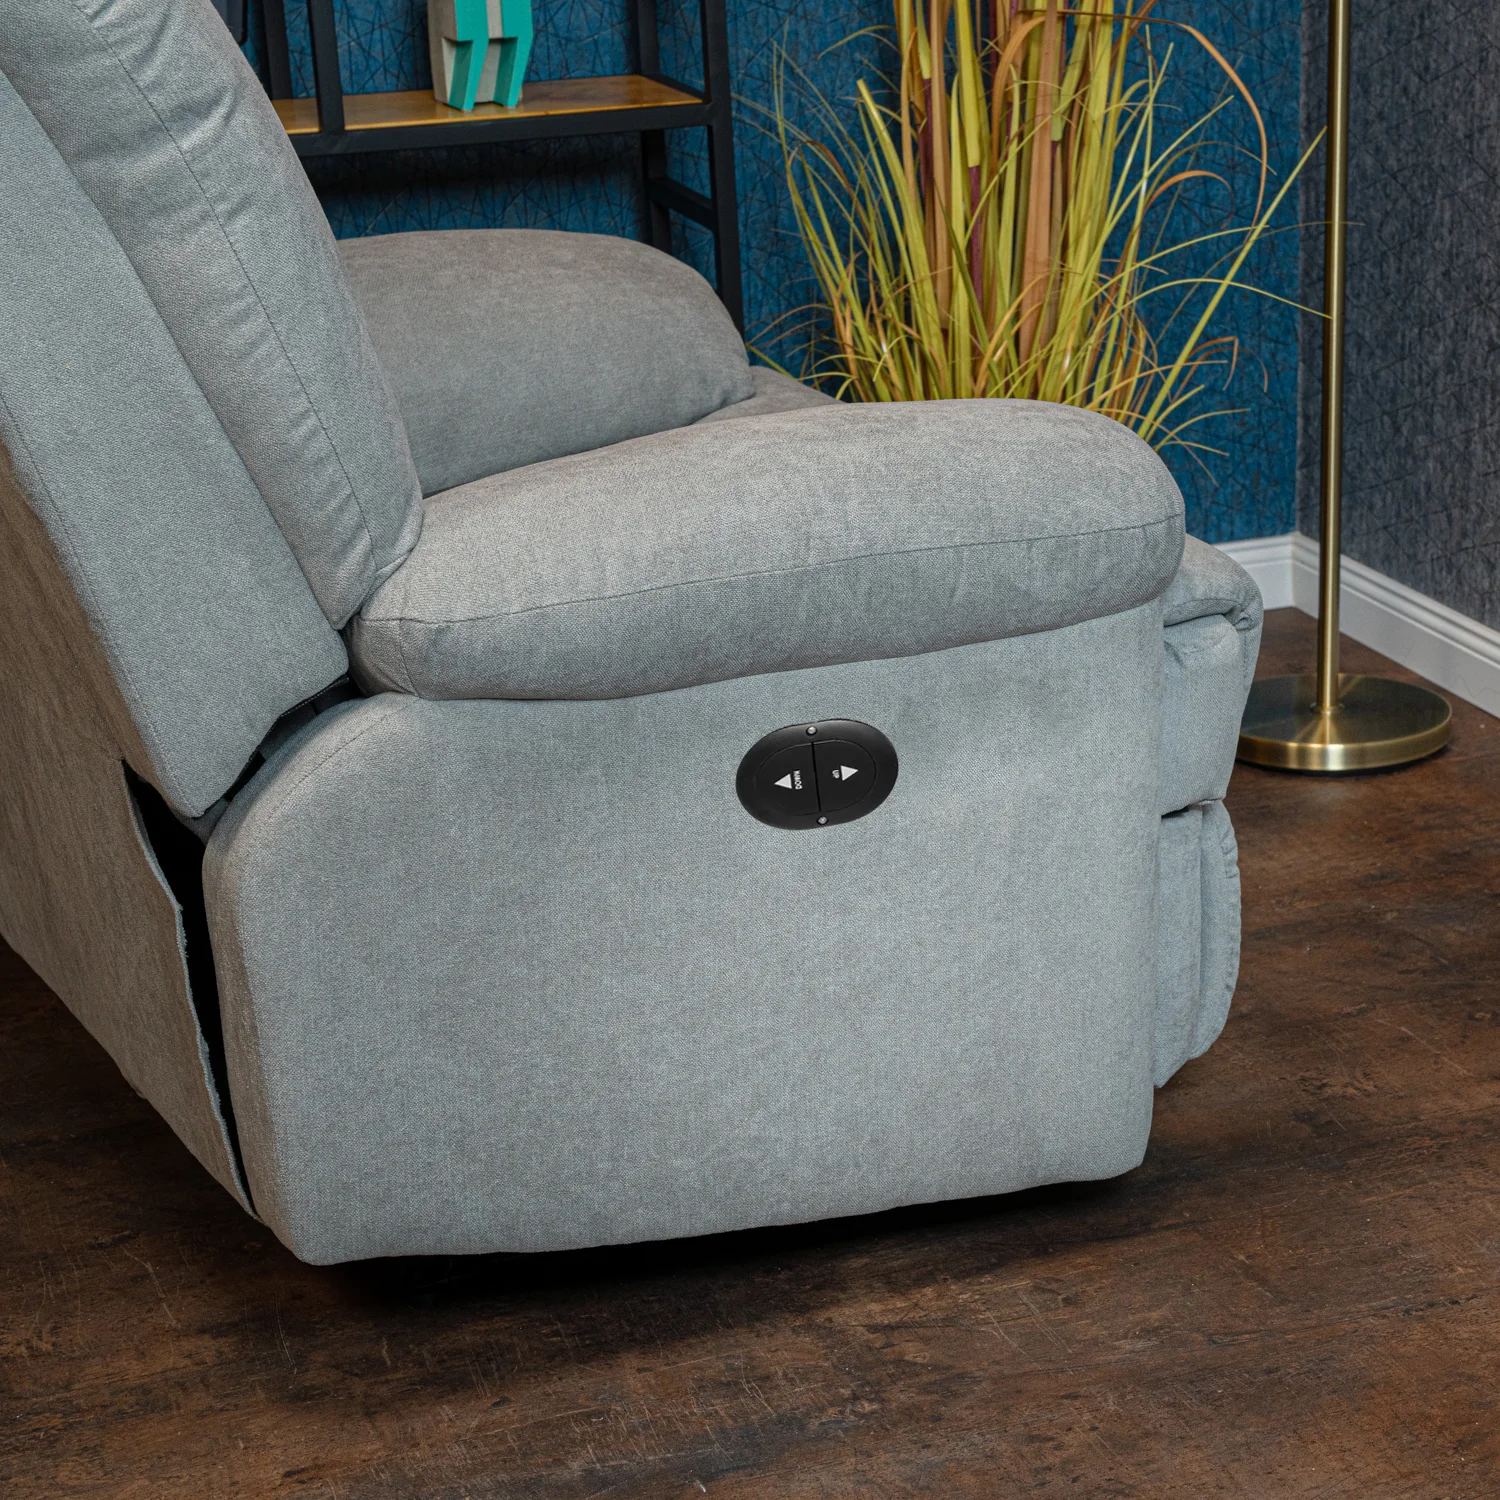 Fekvőfotel, relax fotelágy elektromosan dönthető háttámlával, lábtartóval szürke szövet (8002-ELEC-FAB-GREY)